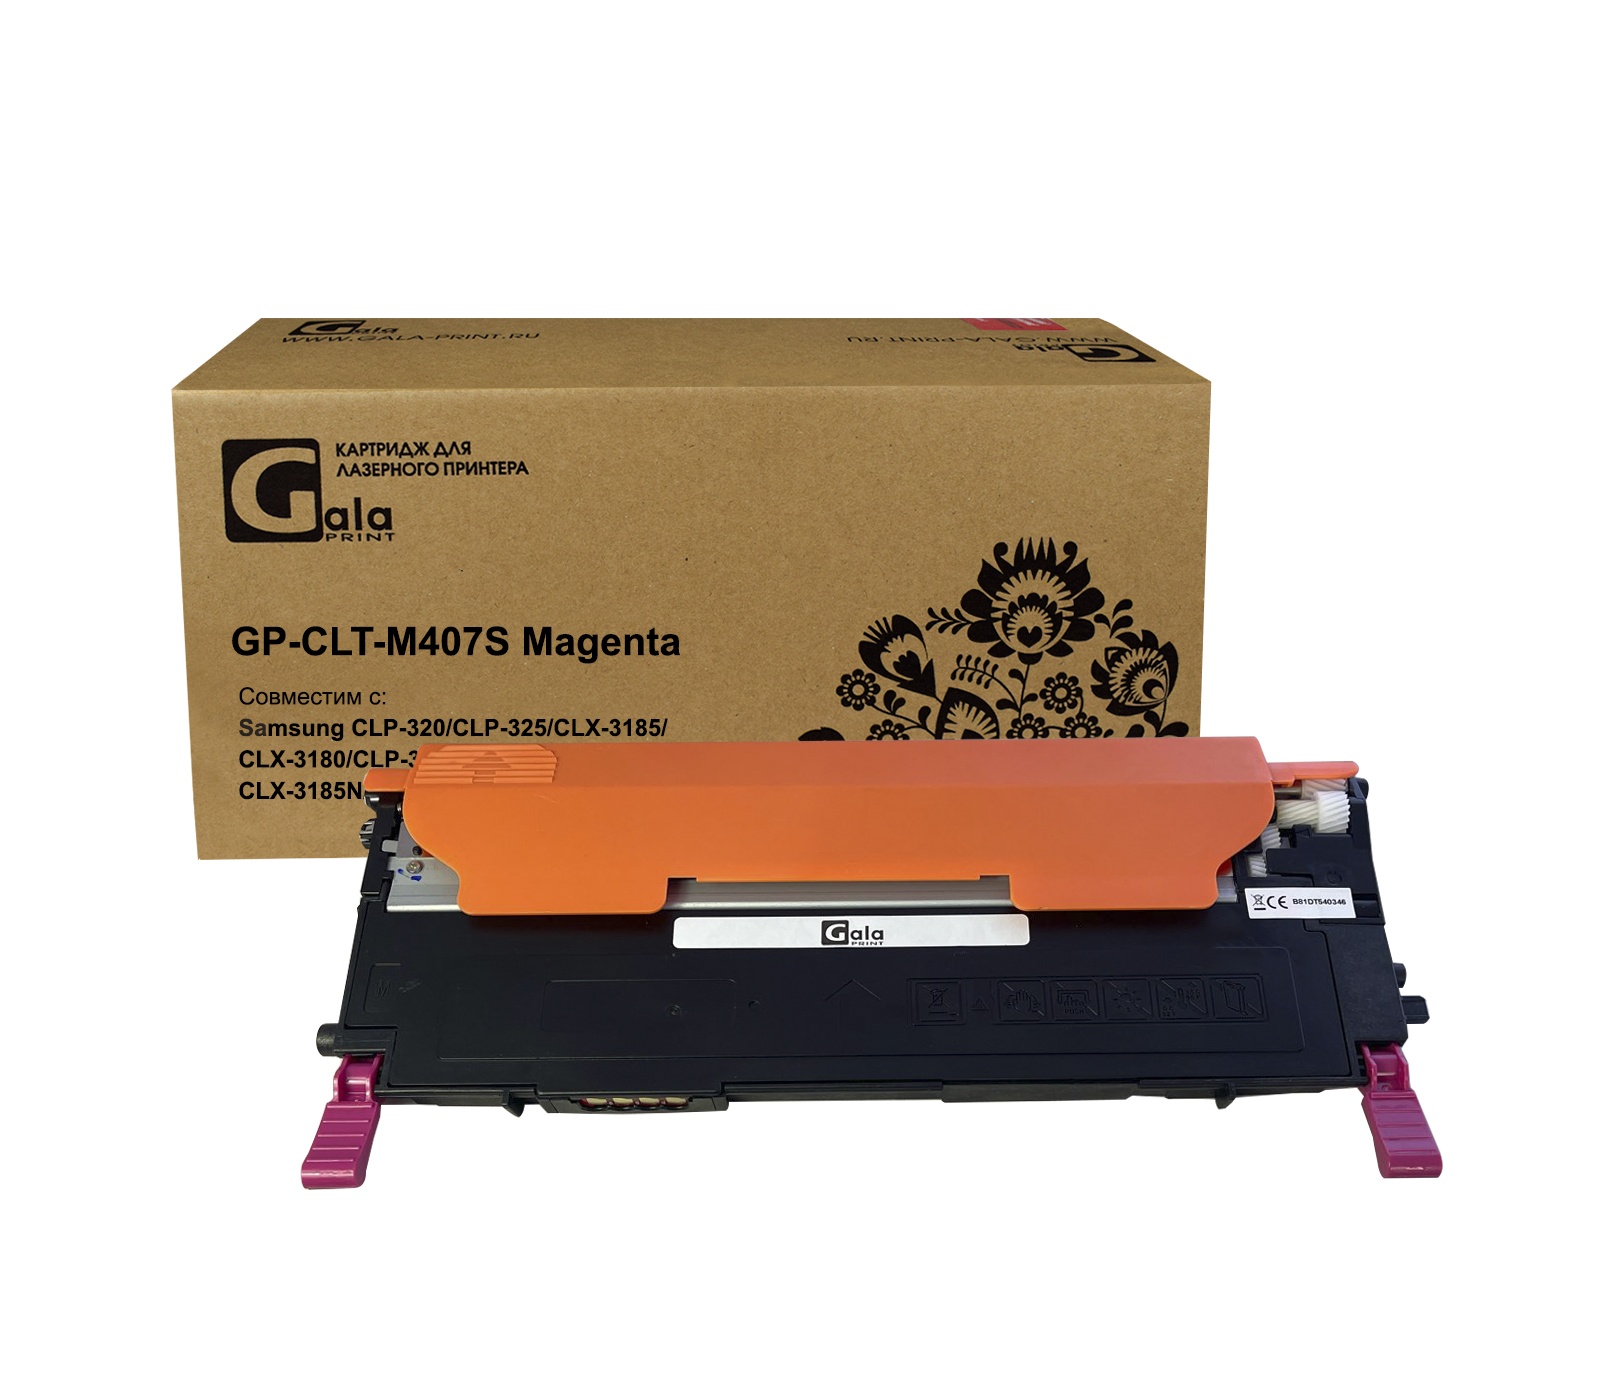 Картридж GP-CLT-M407S для принтеров Samsung CLP-320/CLP-325/CLX-3185/CLX-3180/CLP-325W/CLP-320N/CLX-3185N/CLX-3185FN/CLX-3185W Magenta 1000 копий GalaPrint